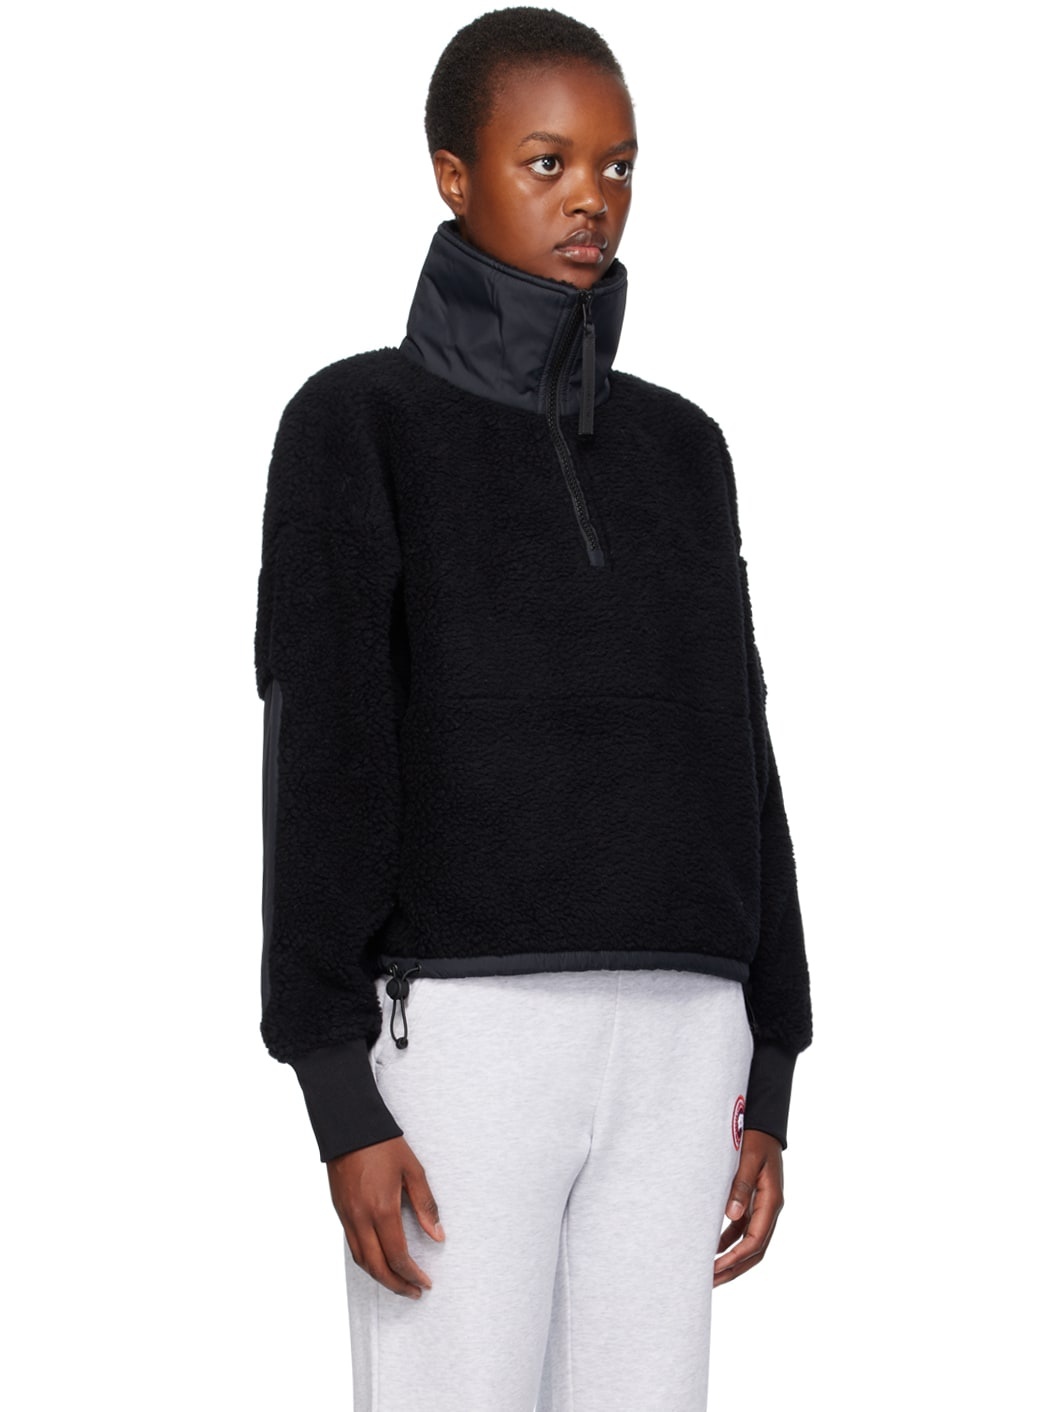 Black Half-Zip Sweatshirt - 2